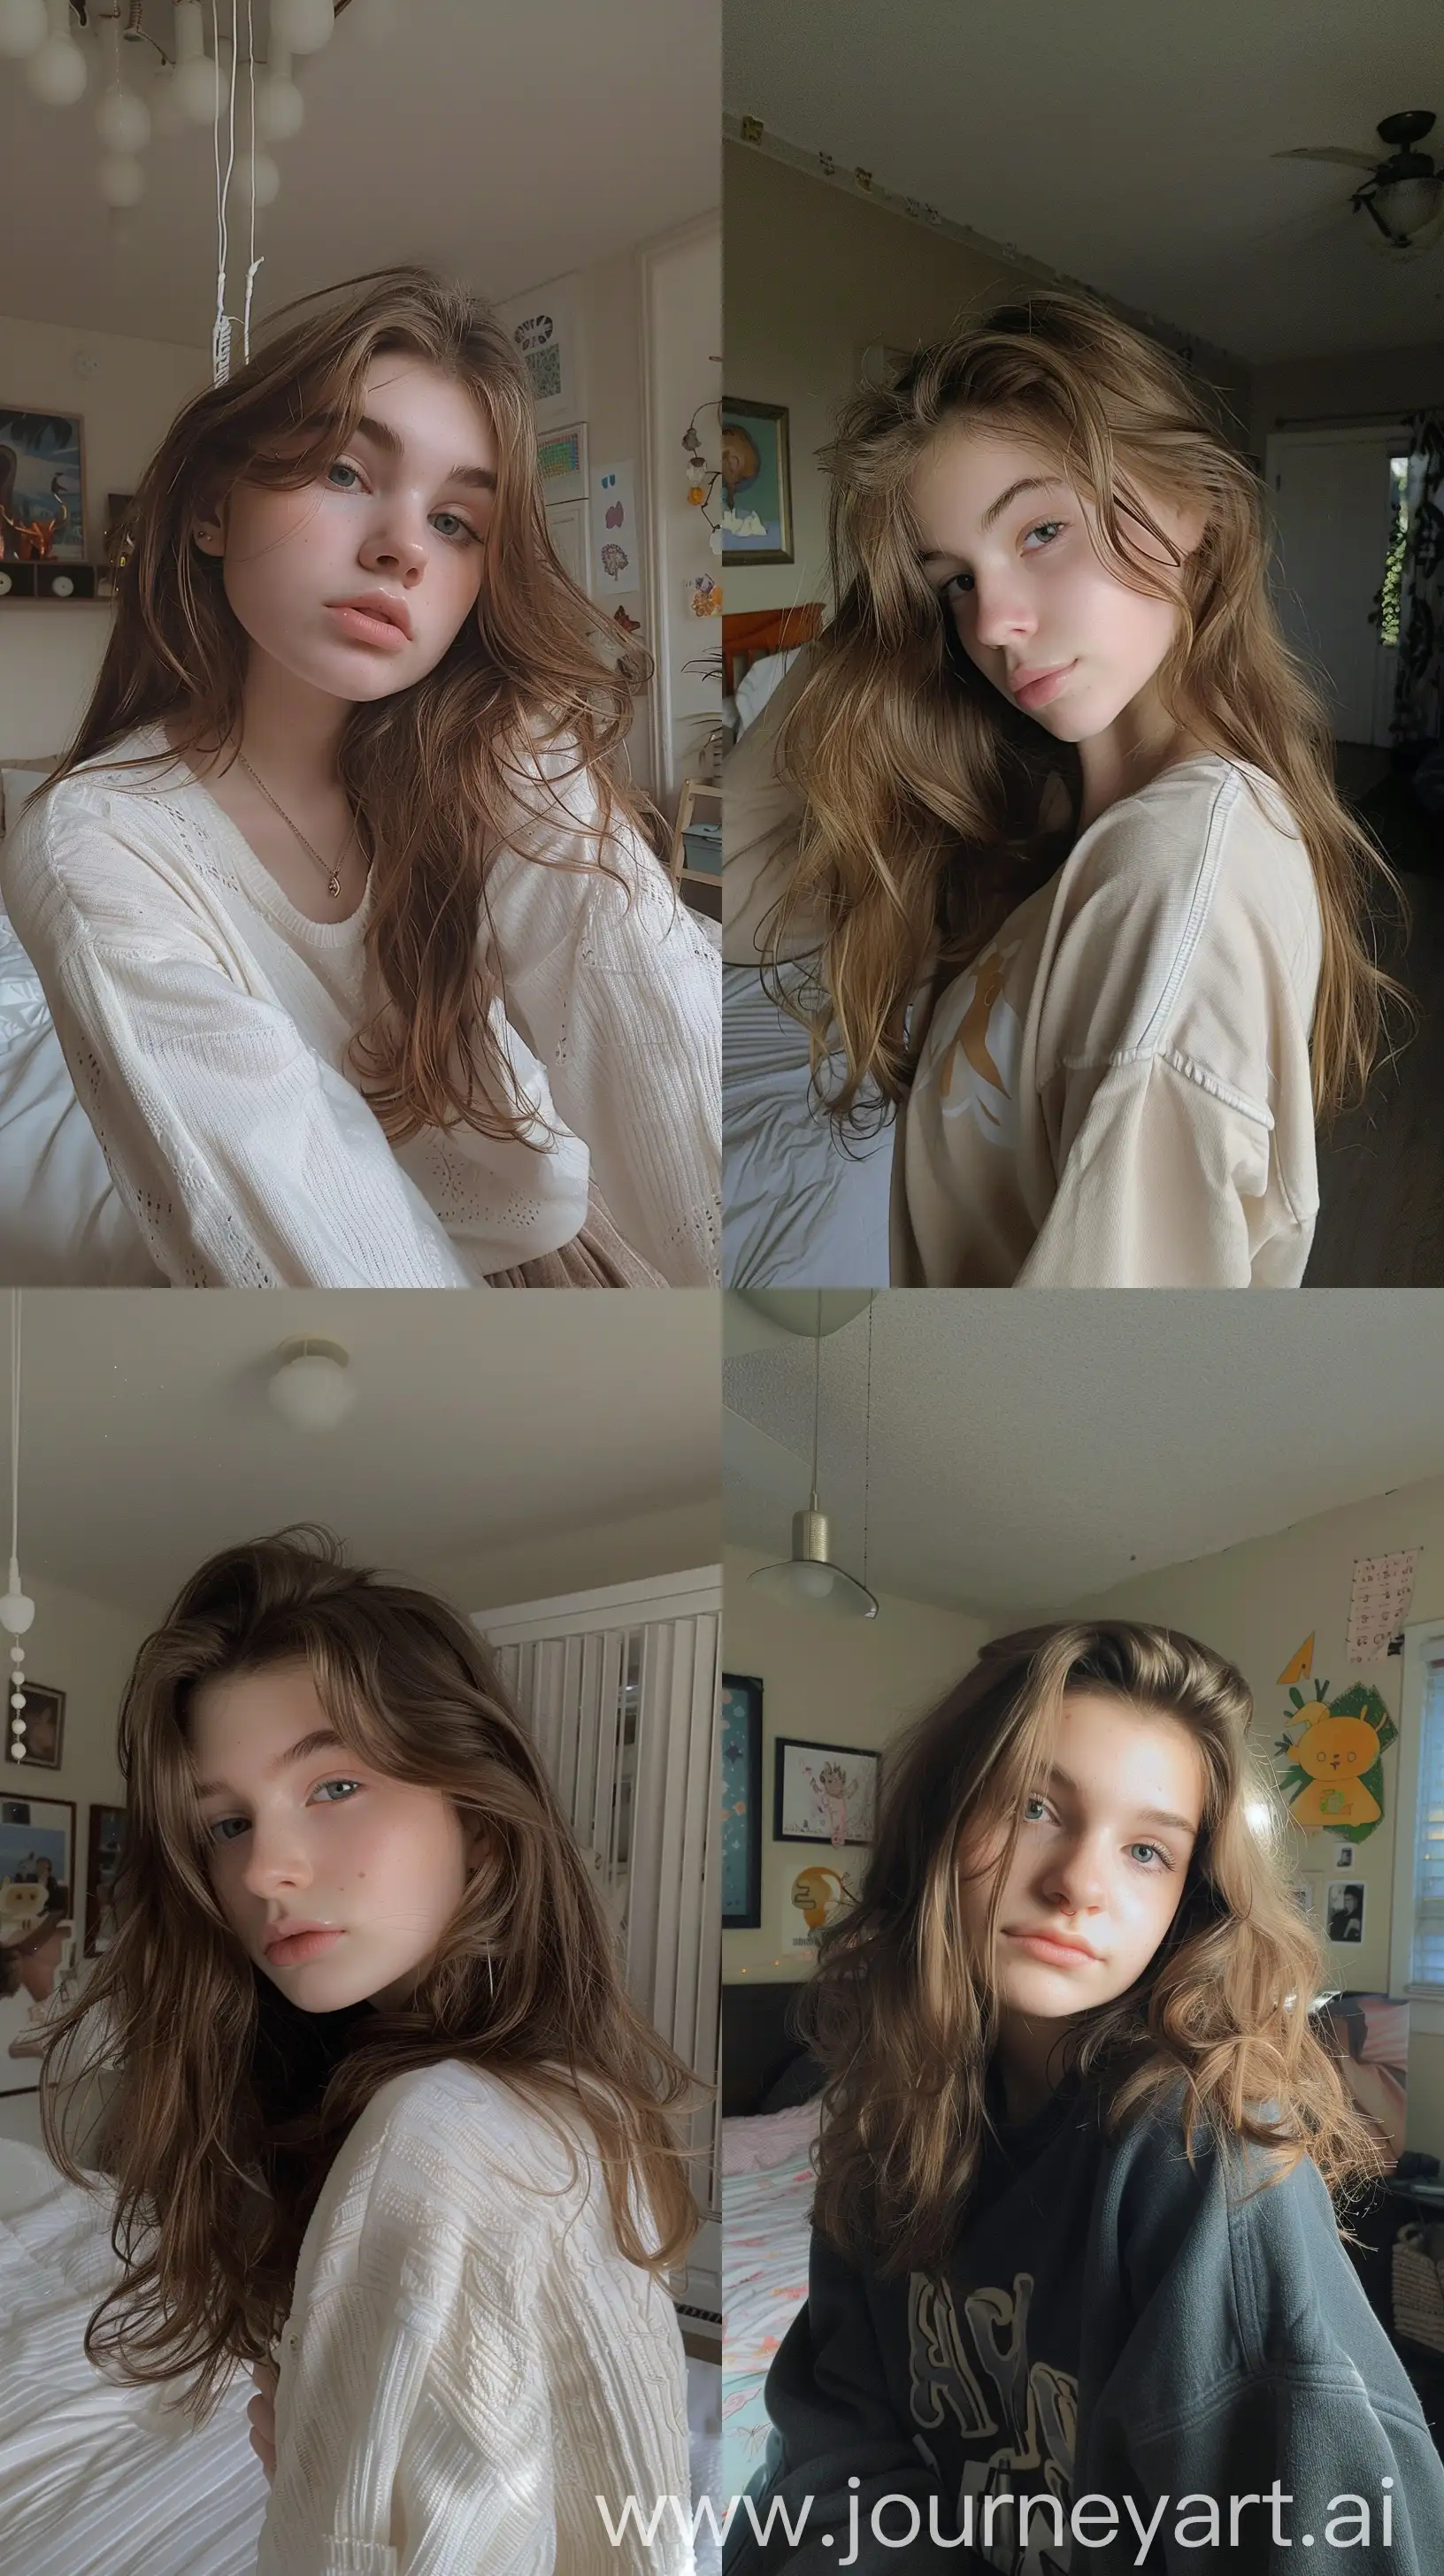 Average-Teenage-Girl-Captures-Bedroom-Selfie-Moment